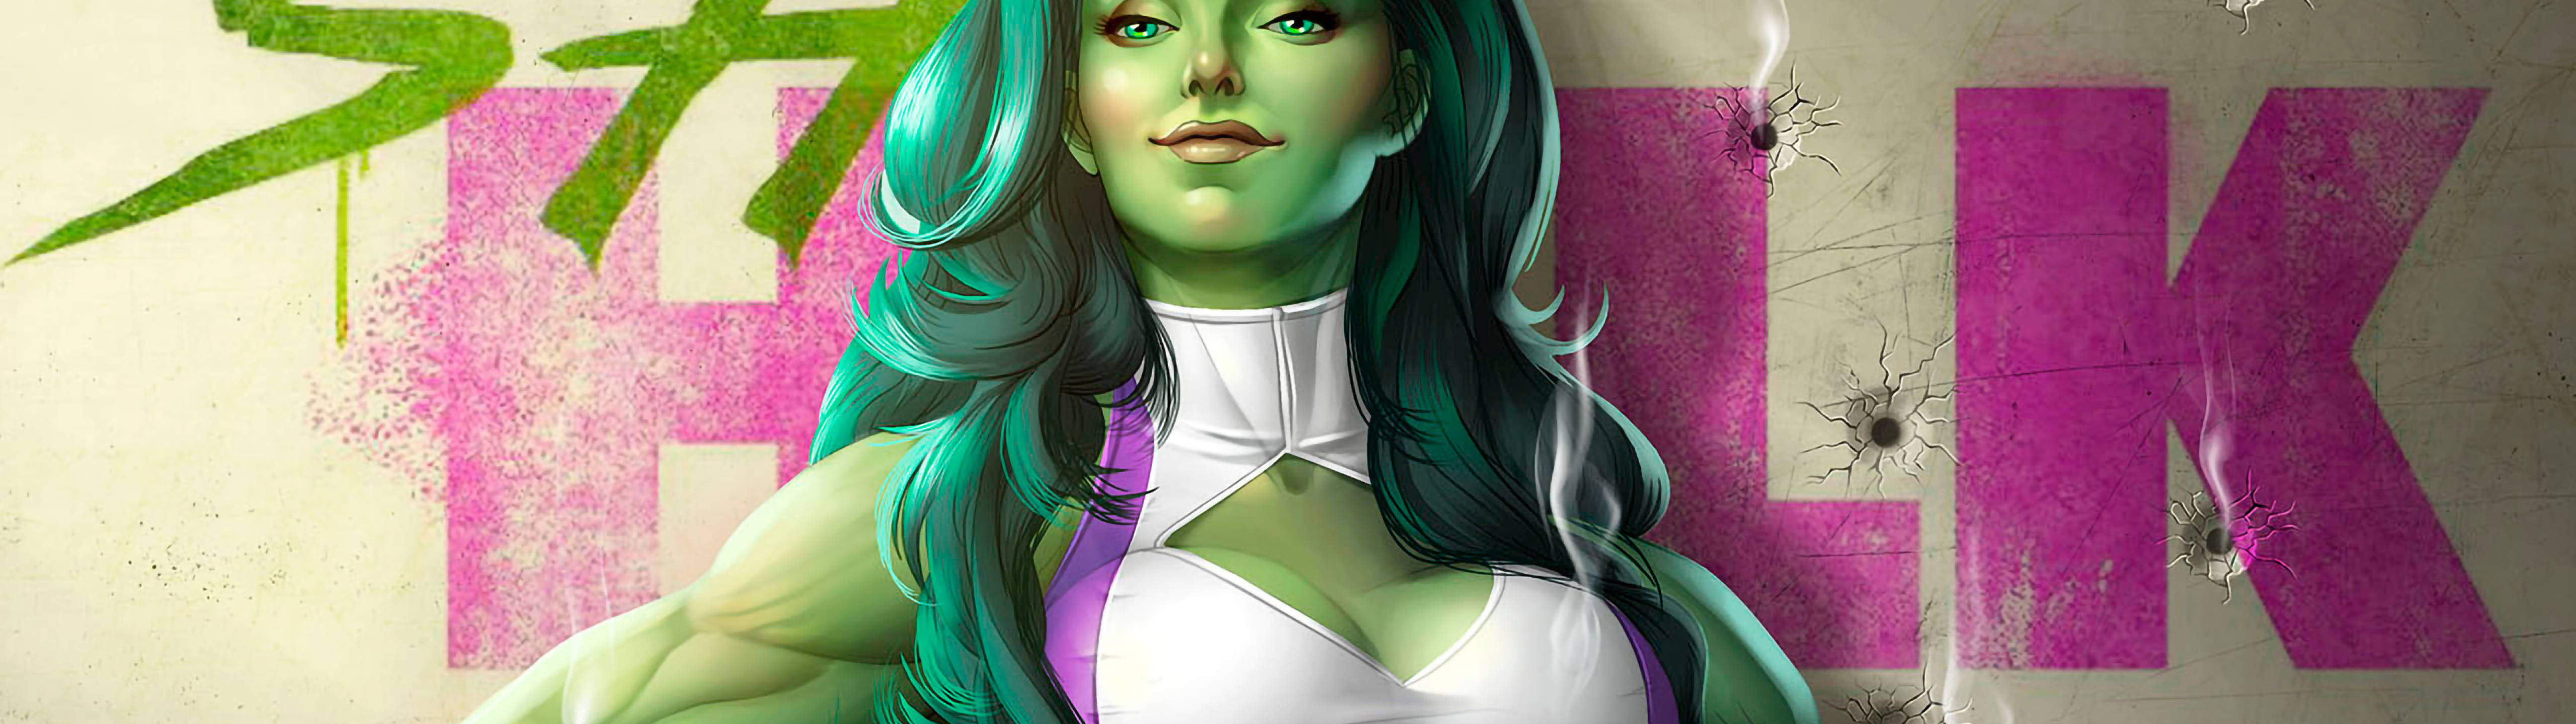 Marvel Hero She Hulk 5120 X 1440 Background